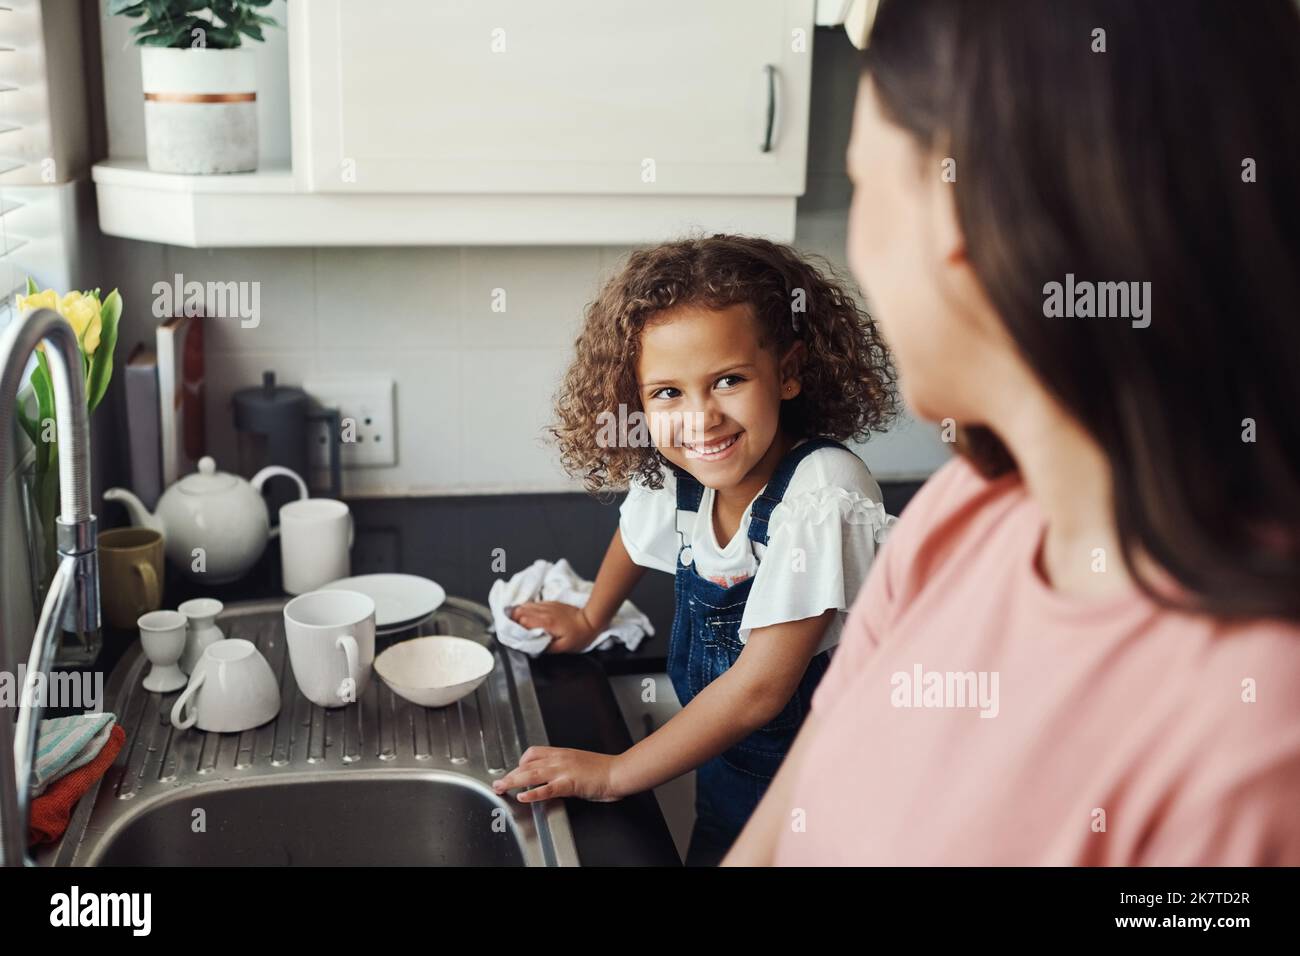 Puis-je jouer maintenant. une adorable jeune fille debout et aidant sa mère avec les plats dans la cuisine à la maison. Banque D'Images